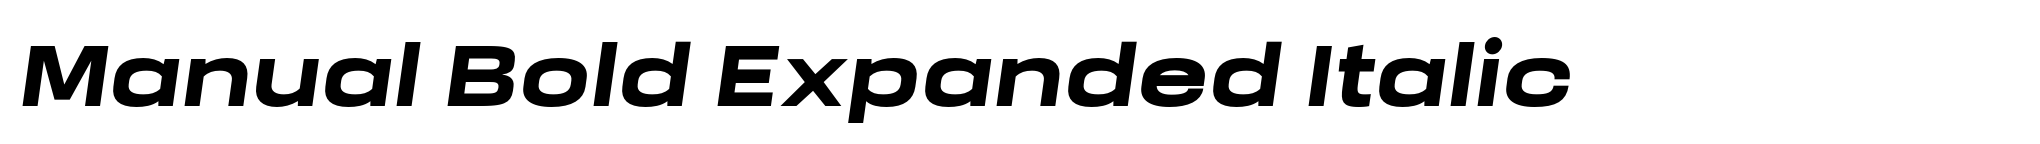 Manual Bold Expanded Italic image